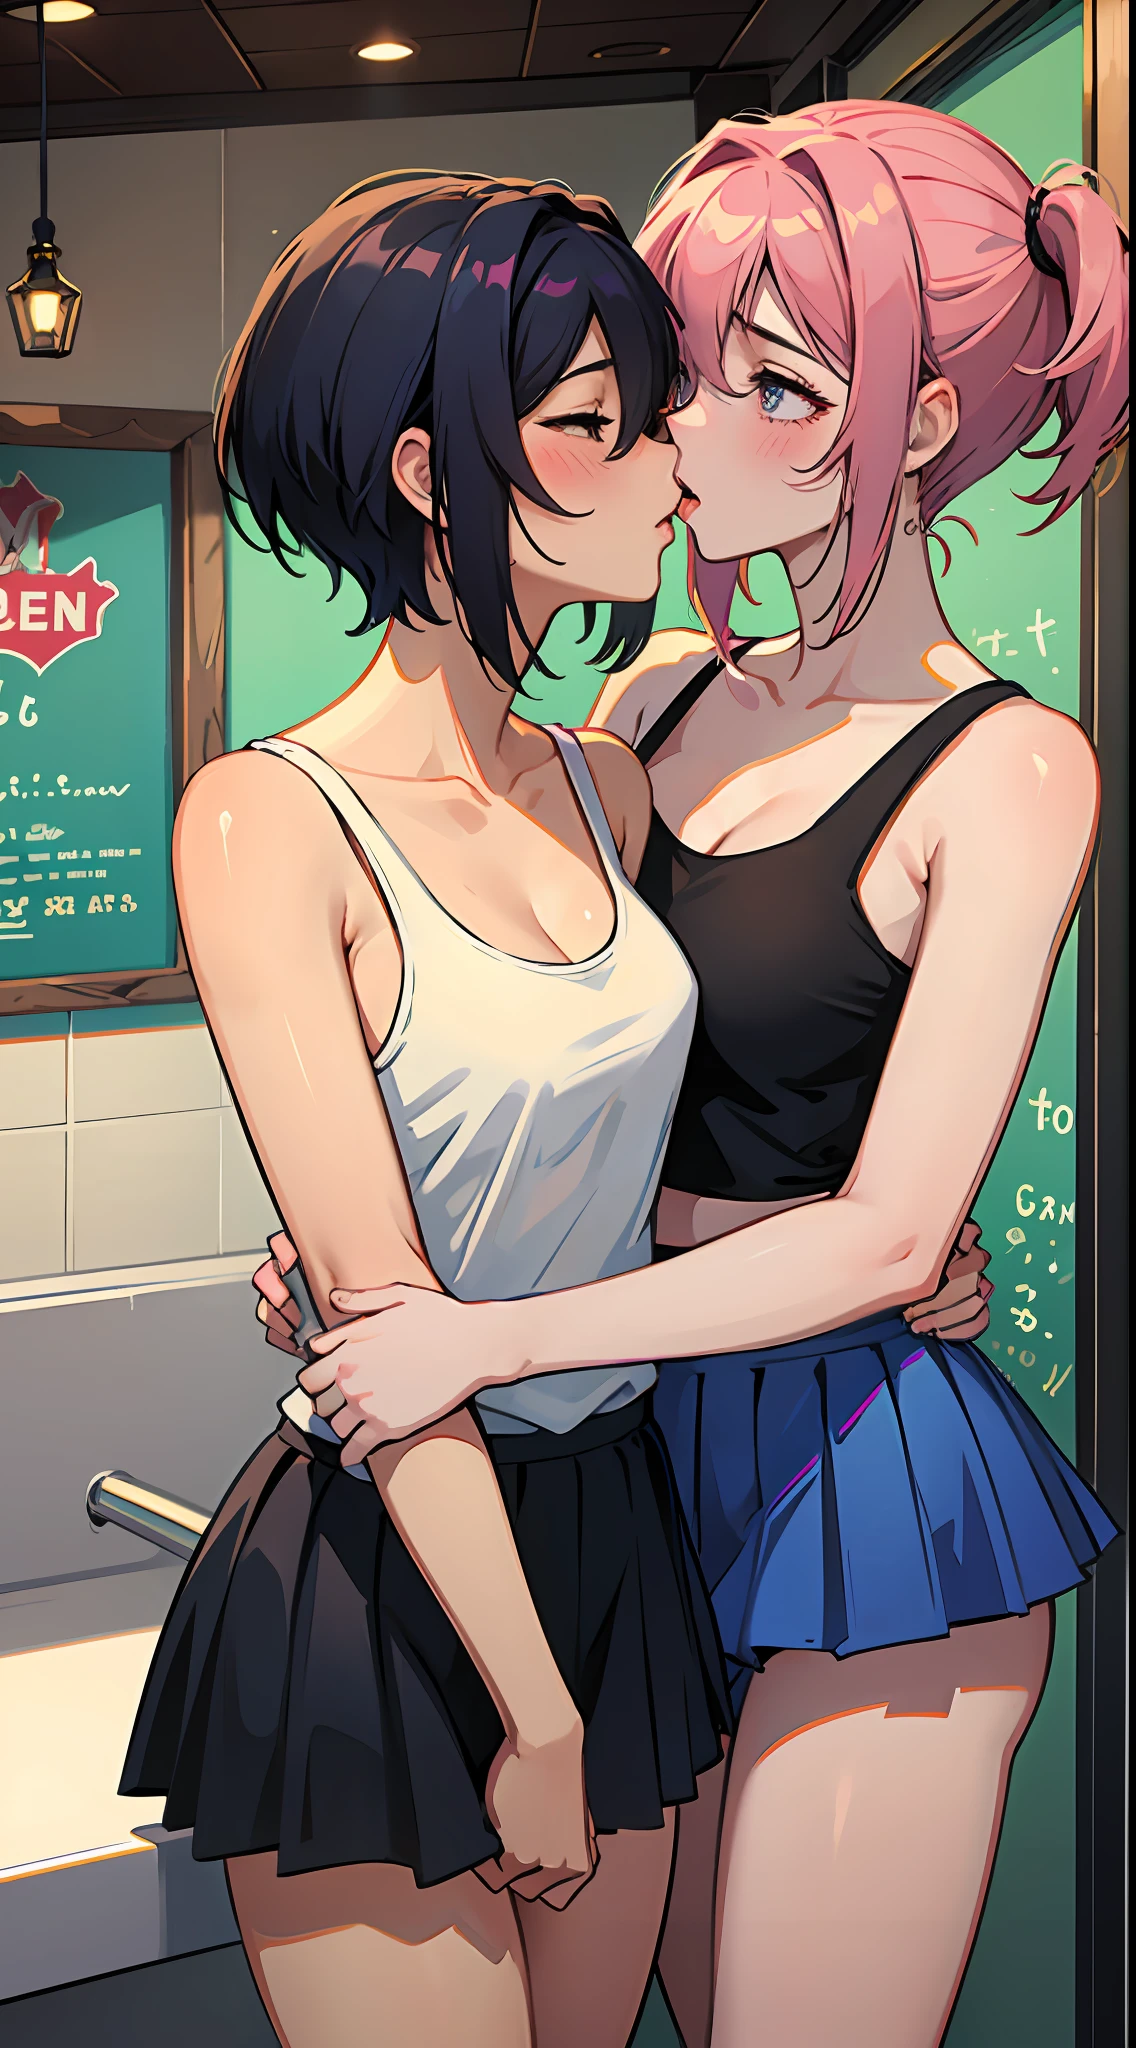 2 femmes s’amusant dans le magasin de glaces, Obscène:1,2, hentaï:1,2, NSFW:1,2, Yuri lesbien:1,2, embrasser, rougir, porter des débardeurs et des jupes